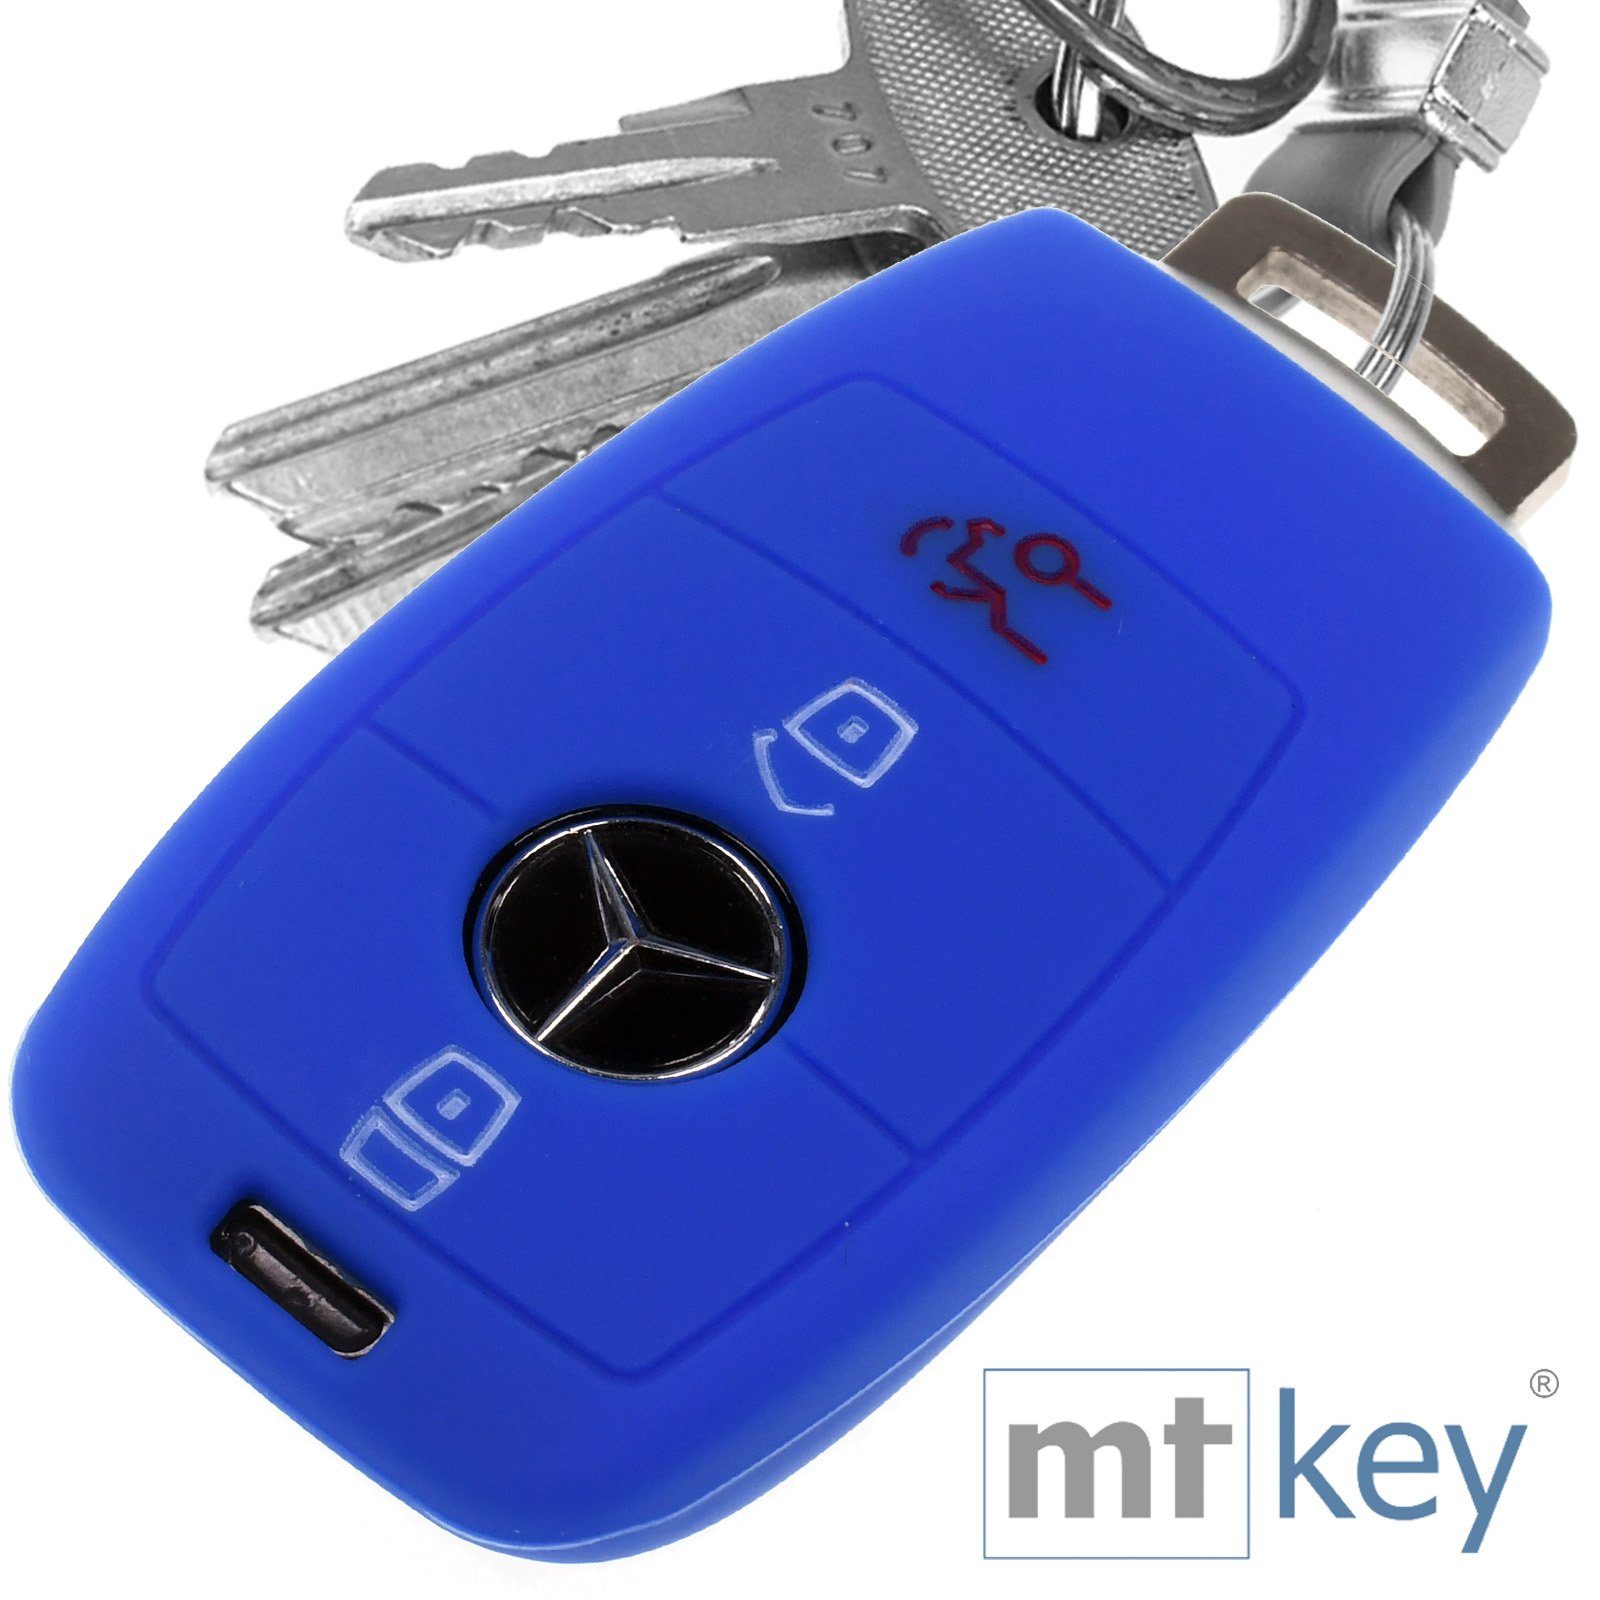 mt-key Schlüsseltasche Autoschlüssel Softcase Silikon Schutzhülle Blau, für Mercedes Benz E-Klasse W213 S213 C238 A238 3 Tasten KEYLESS